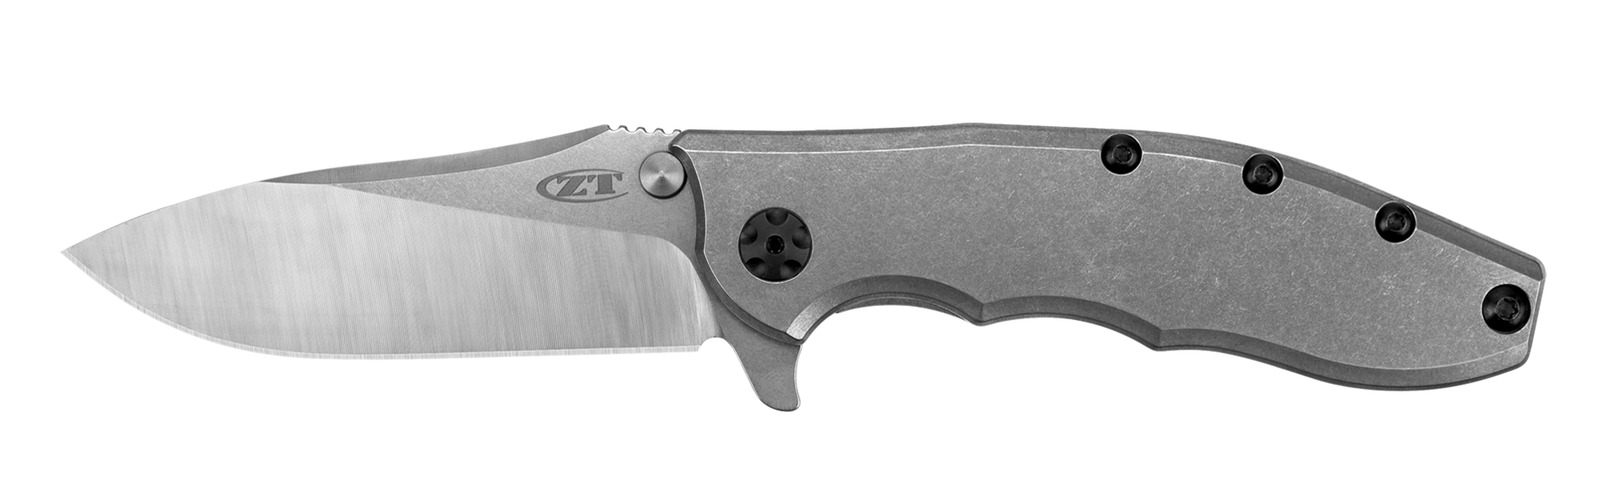 Zero Tolerance Knives Stonewashed Titanium Stainless Pocket Knife 0562TI